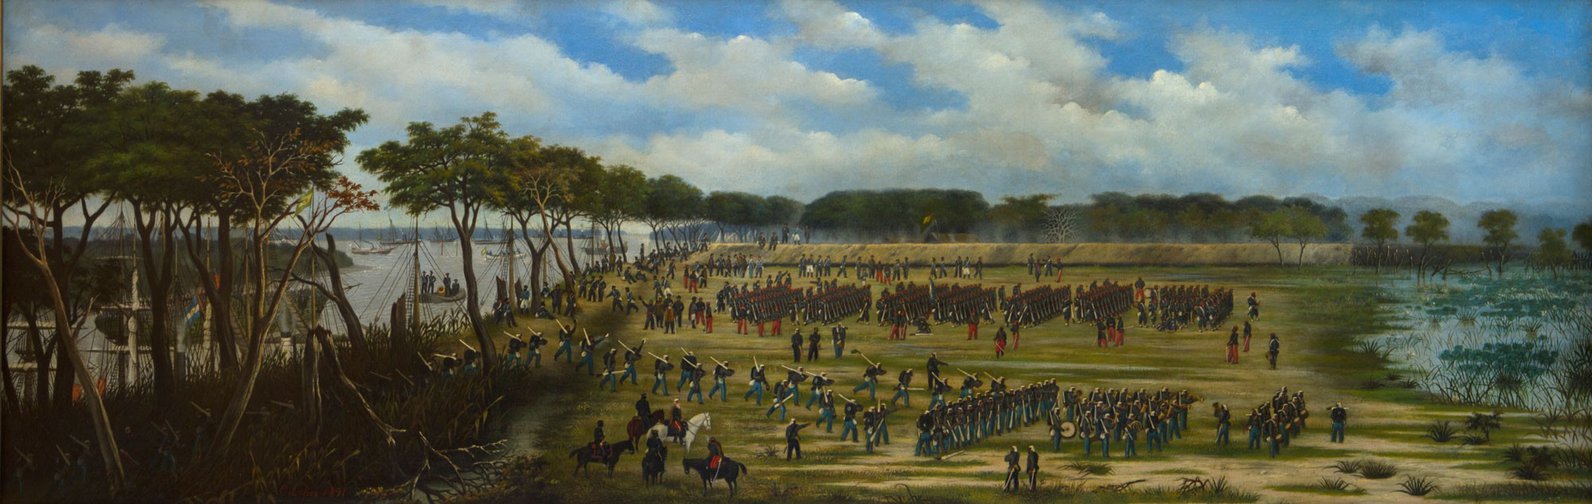 Desembarco del Ejército Argentino frente a las trincheras de Curuzú, el 12 de septiembre de 1866